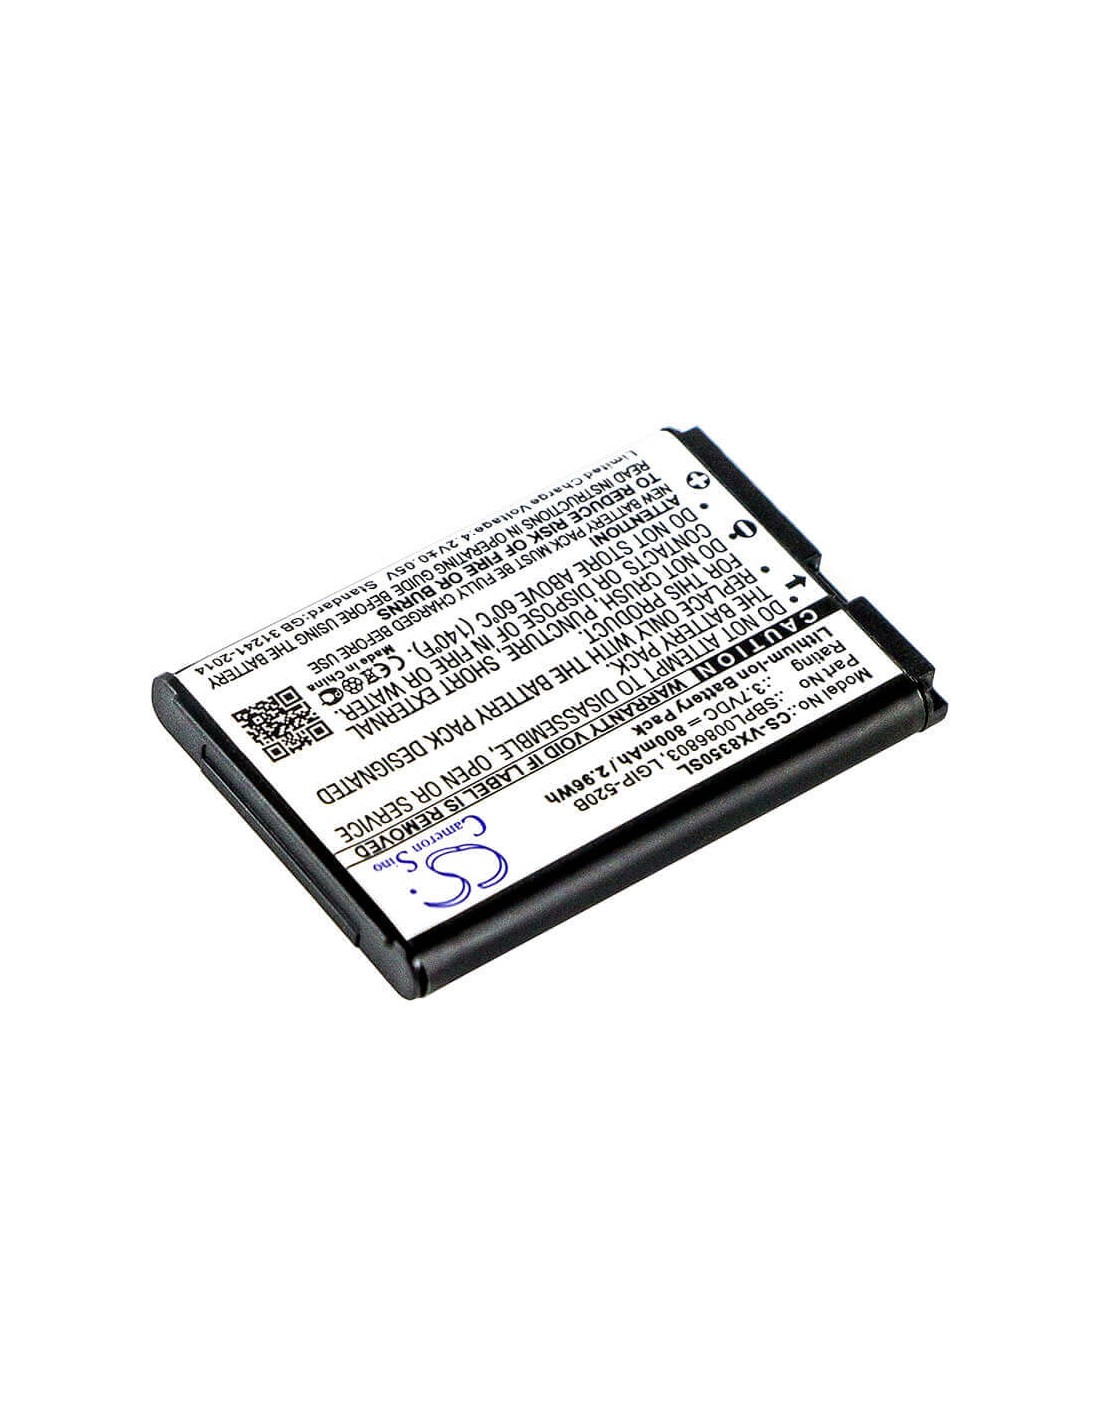 Battery for LG VX8350, VX5200, VX5400 3.7V, 800mAh - 2.96Wh